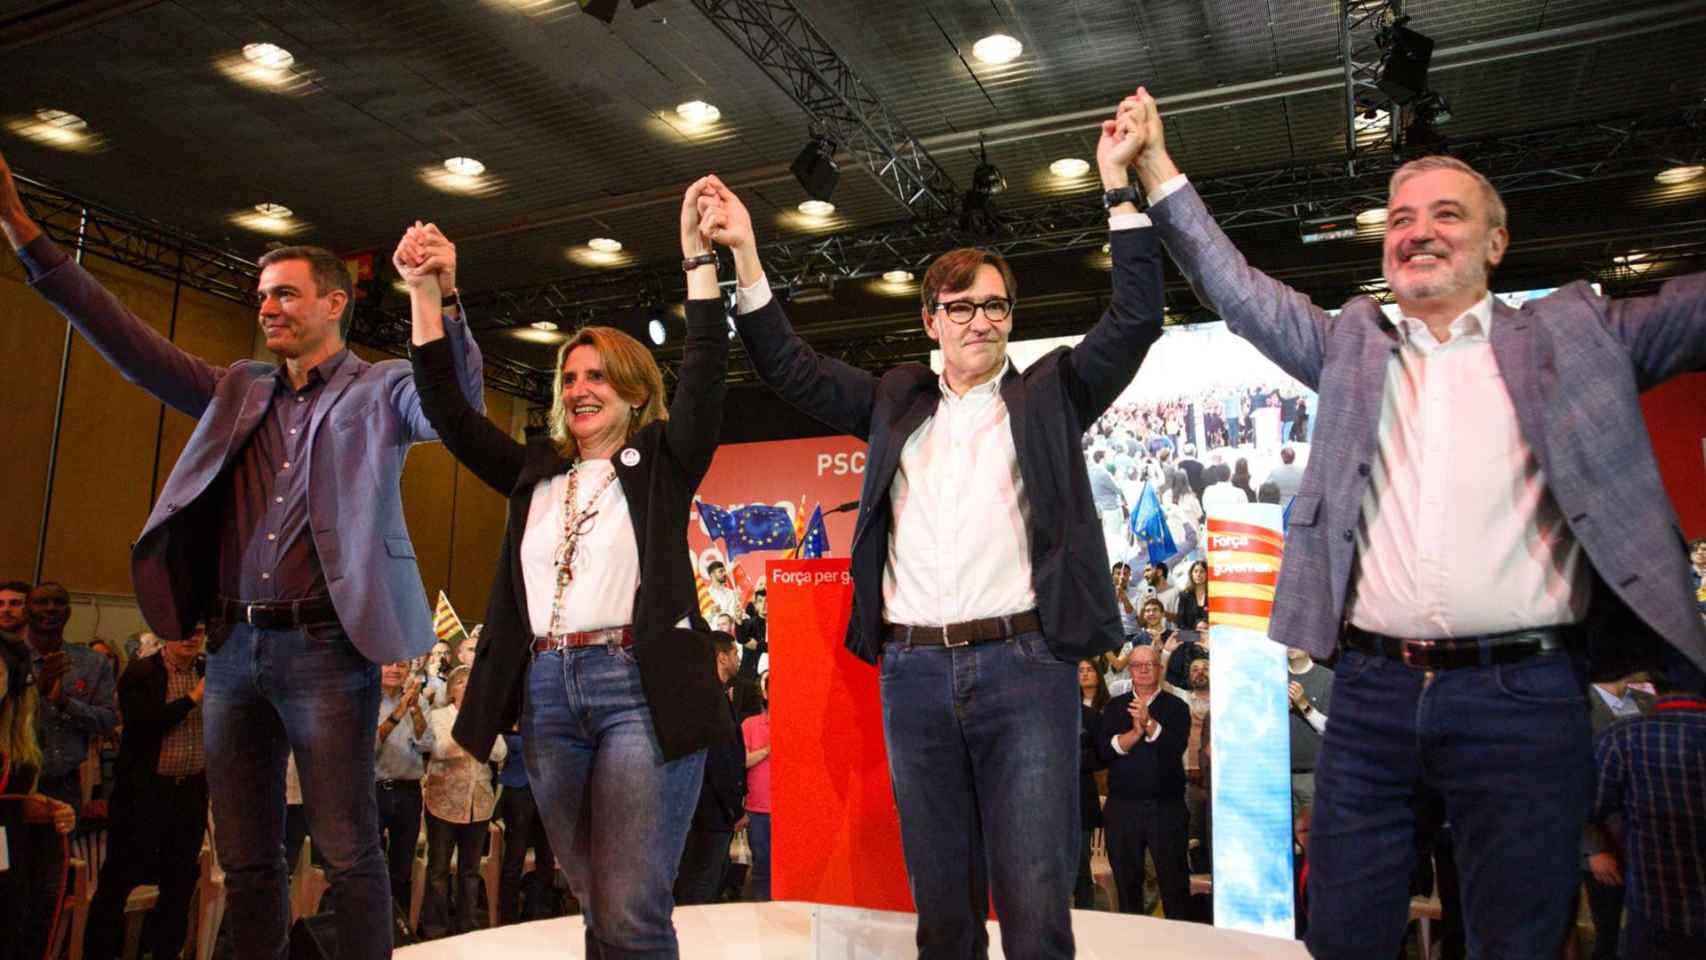 Pedro Sánchez y Teresa Ribera (PSOE), junto a Salvador Illa y Jaume Collboni (PSC) en un acto en el Palacio de Congresos de Cataluña, en Barcelona, el 18 de mayo